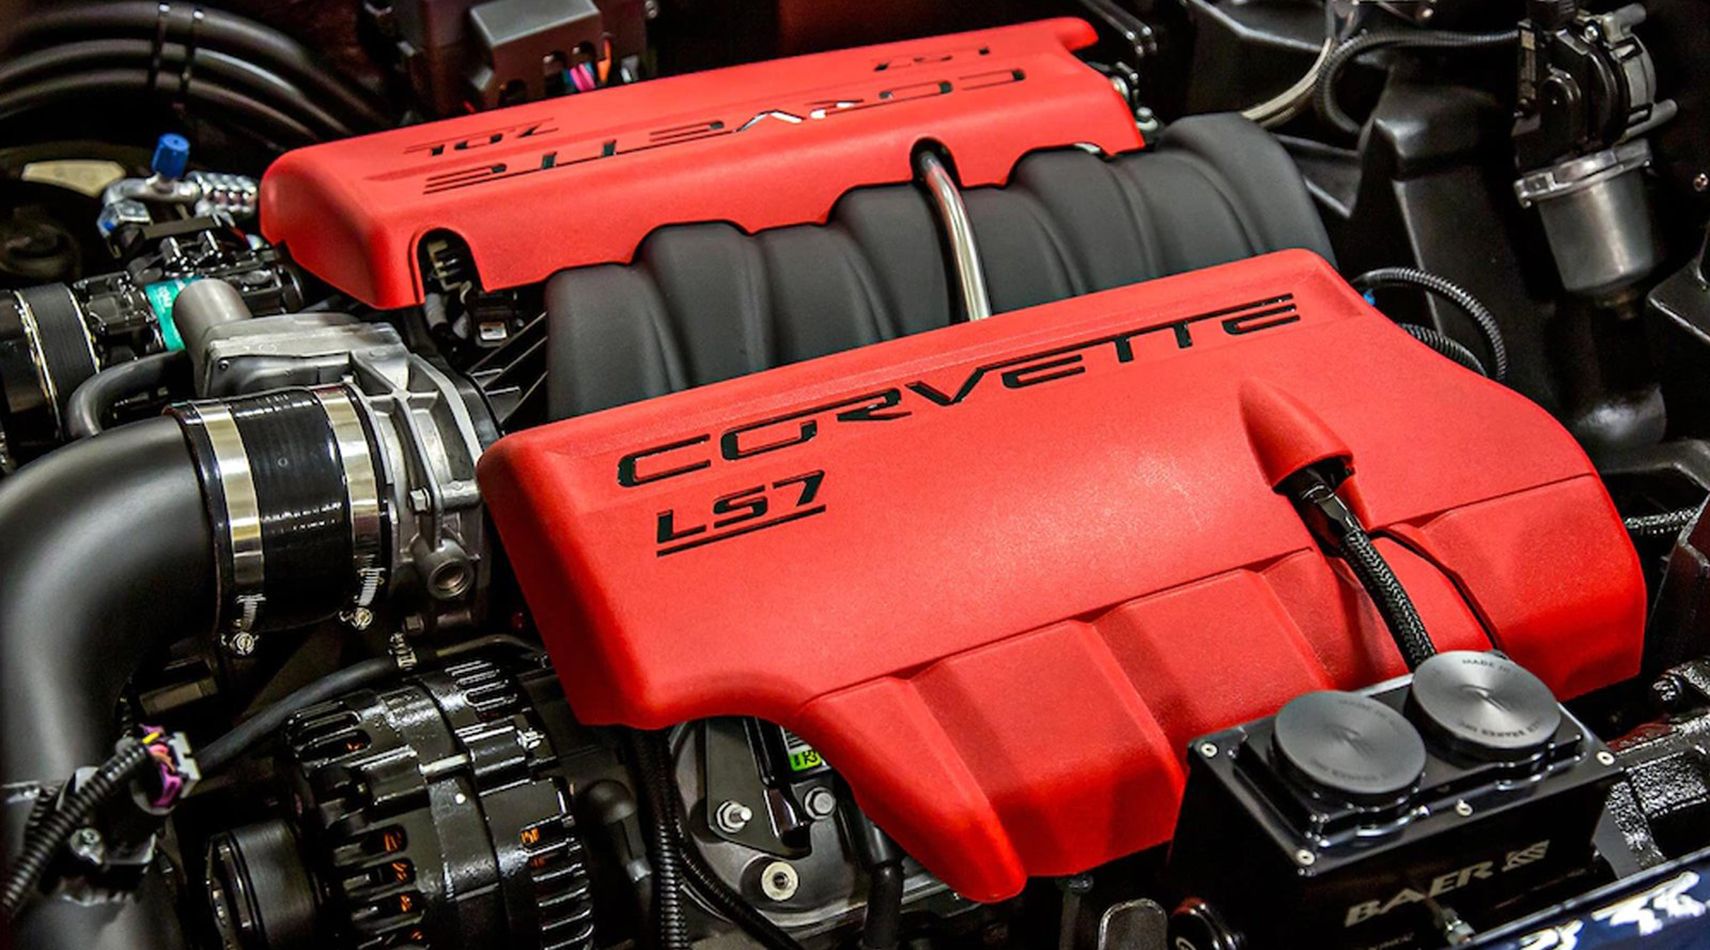 Corvette C3 LS7 engine